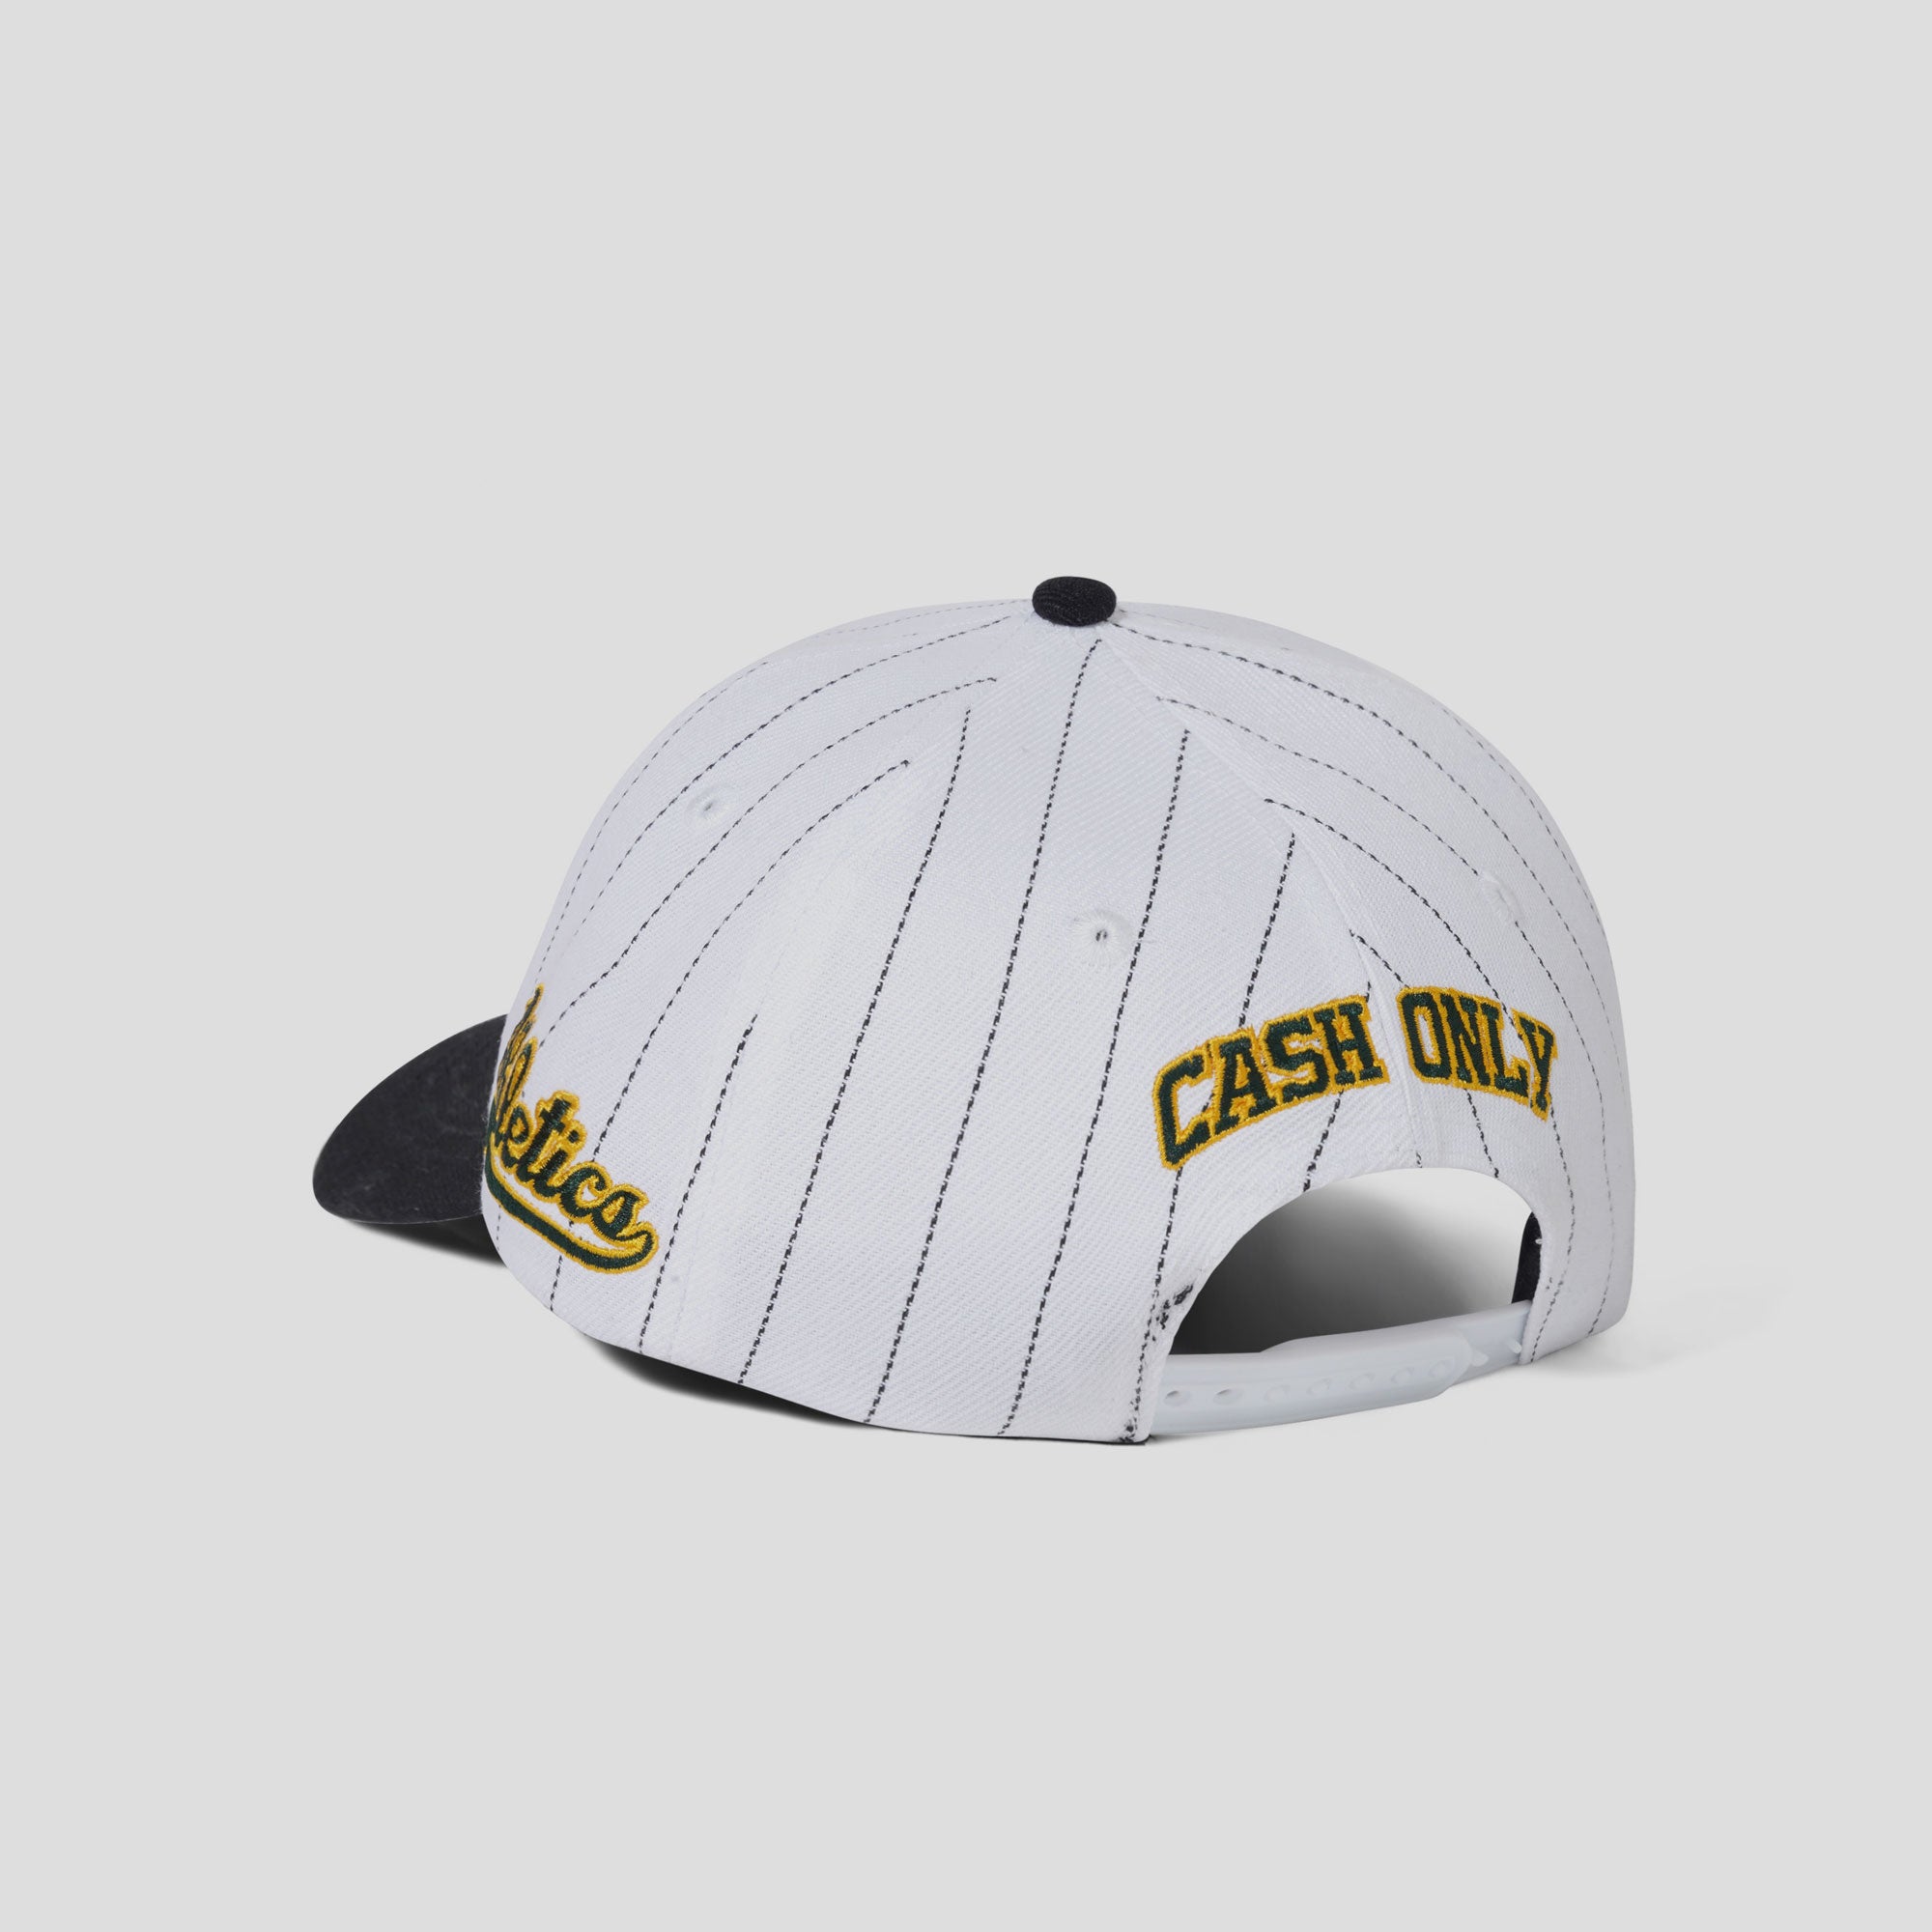 Cash Only Ballpark Snapback Cap - White / Black